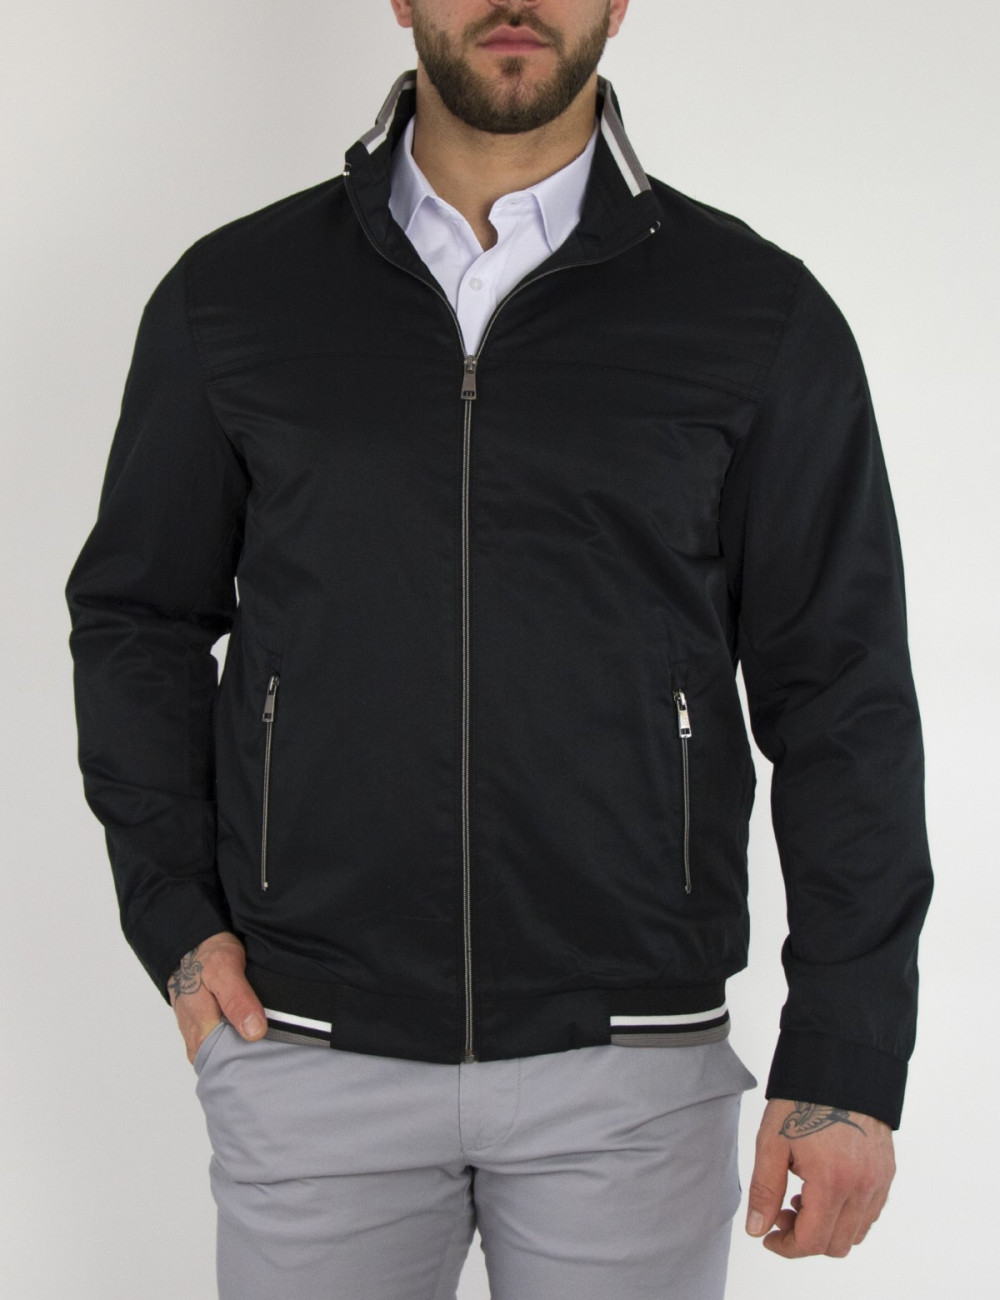 Ανδρικό μαύρο Jacket με γιακά WS10160